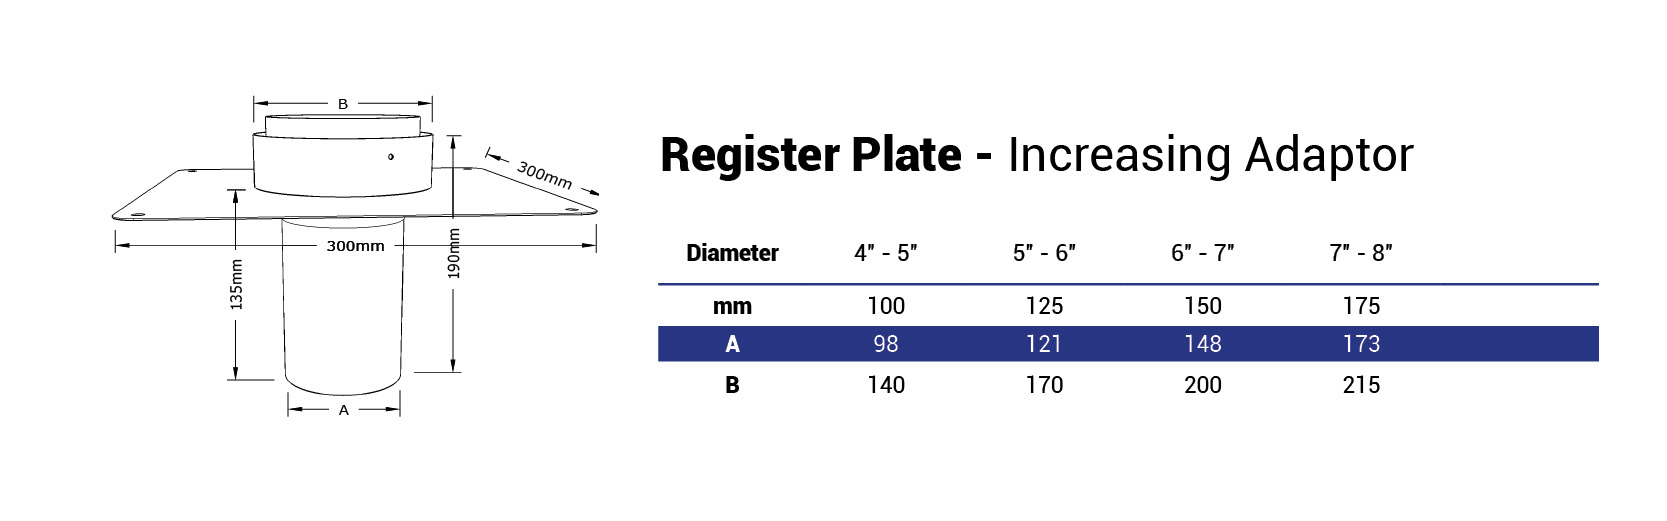 Increasing register plate adaptor